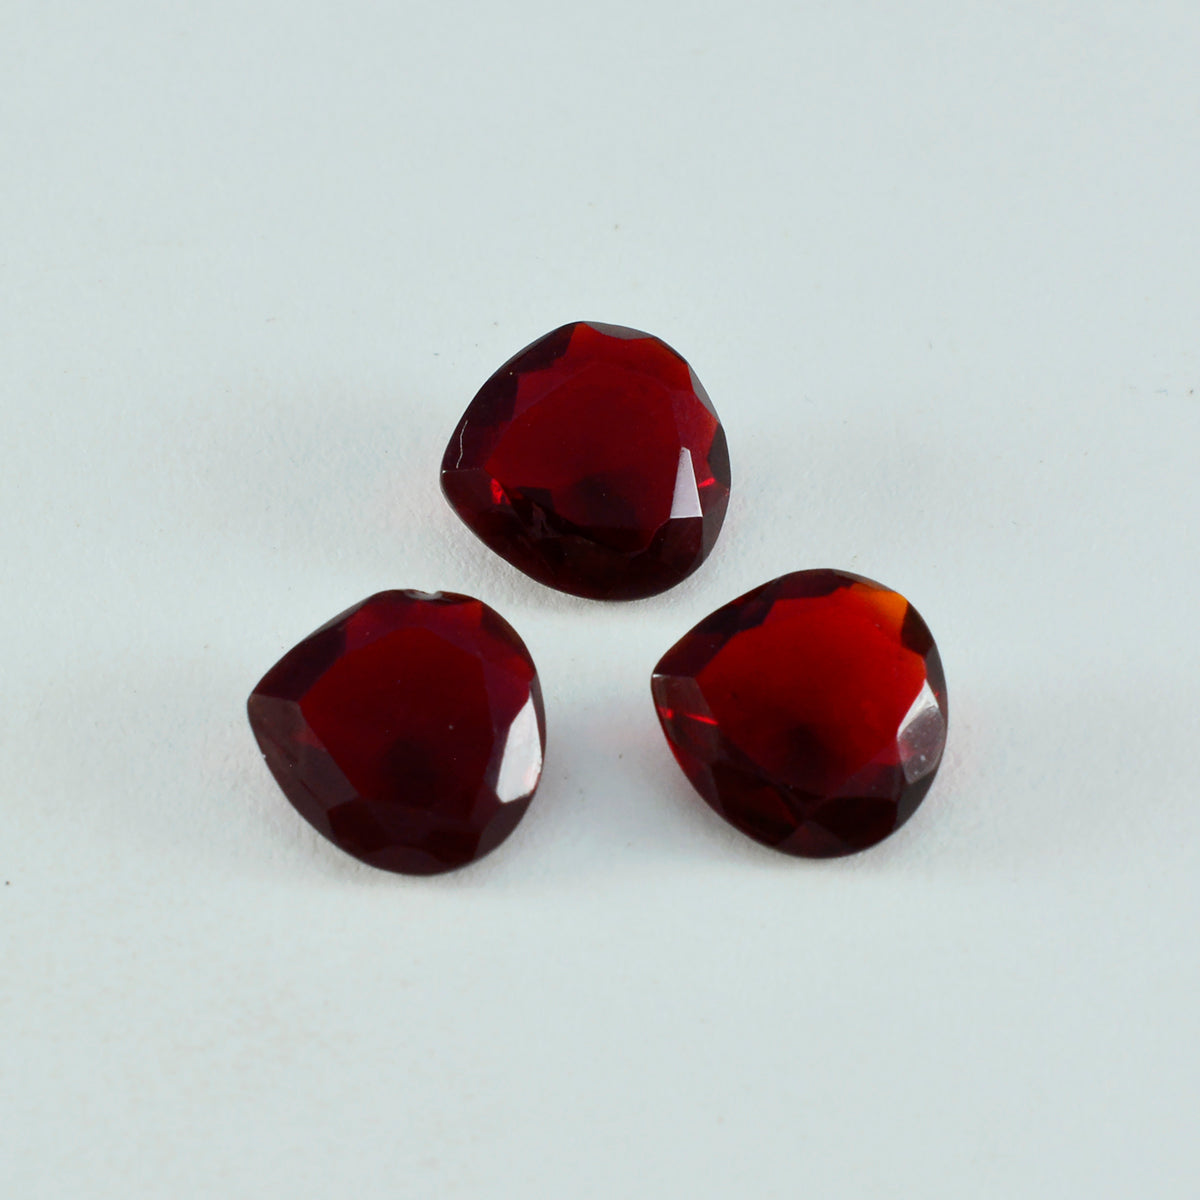 riyogems 1 pieza de rubí rojo cz facetado 15x15 mm forma de corazón piedra preciosa de calidad aaa